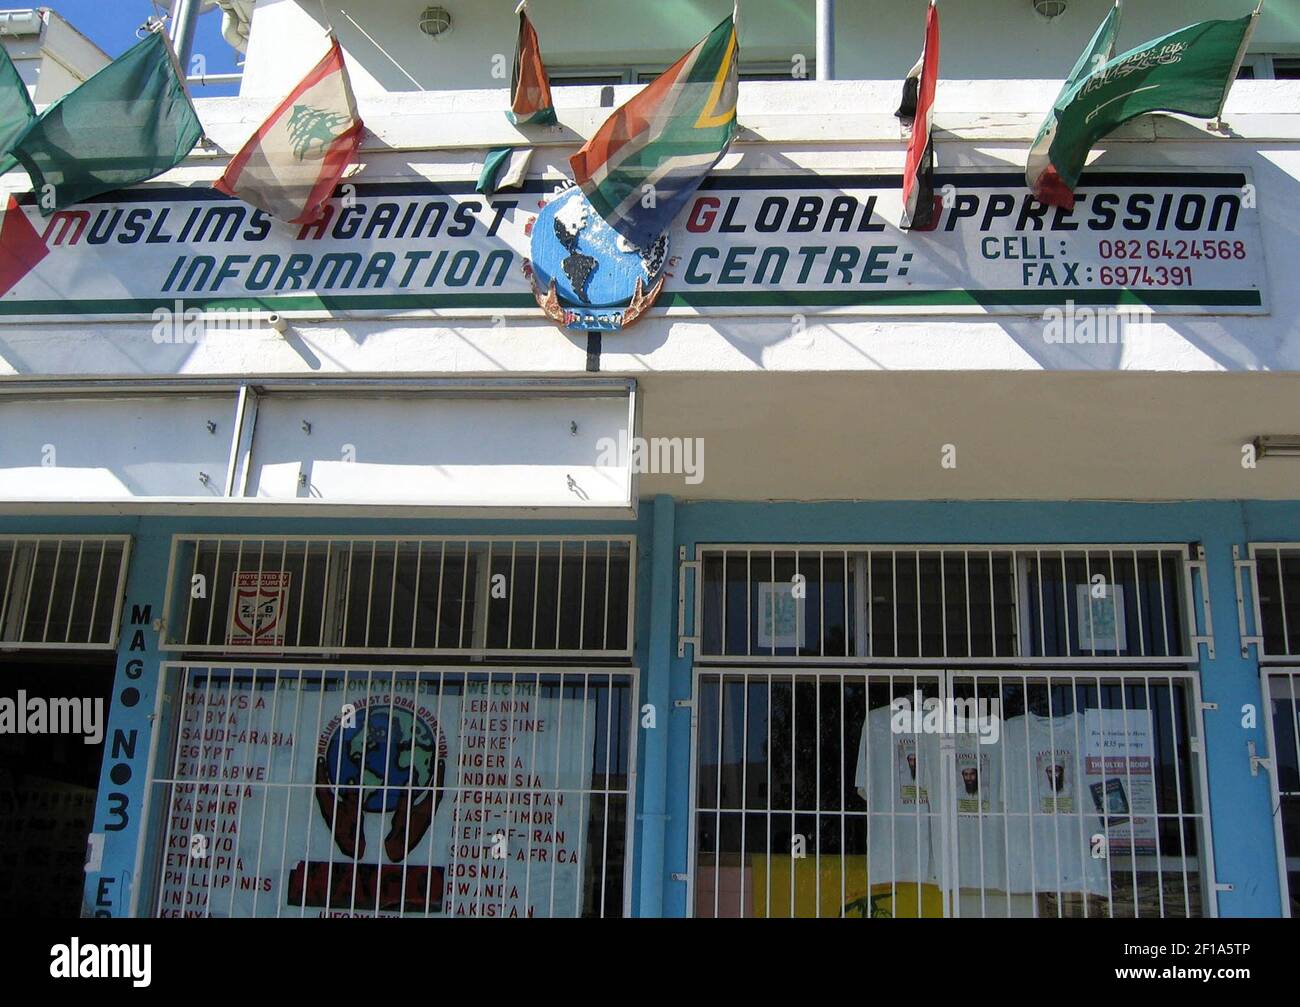 KRT WORLD NEWS STORY SLUGED: TERROR-SUDÁFRICA KRT FOTOGRAFÍA DE SUDARSAN RAGHAVAN/KRT (agosto de 1) Banderas de diferentes naciones árabes vuelan fuera de los musulmanes contra la opresión Global Centro de Información en Ciudad del Cabo, Sudáfrica. (Foto de cdm) 2004 Foto de stock